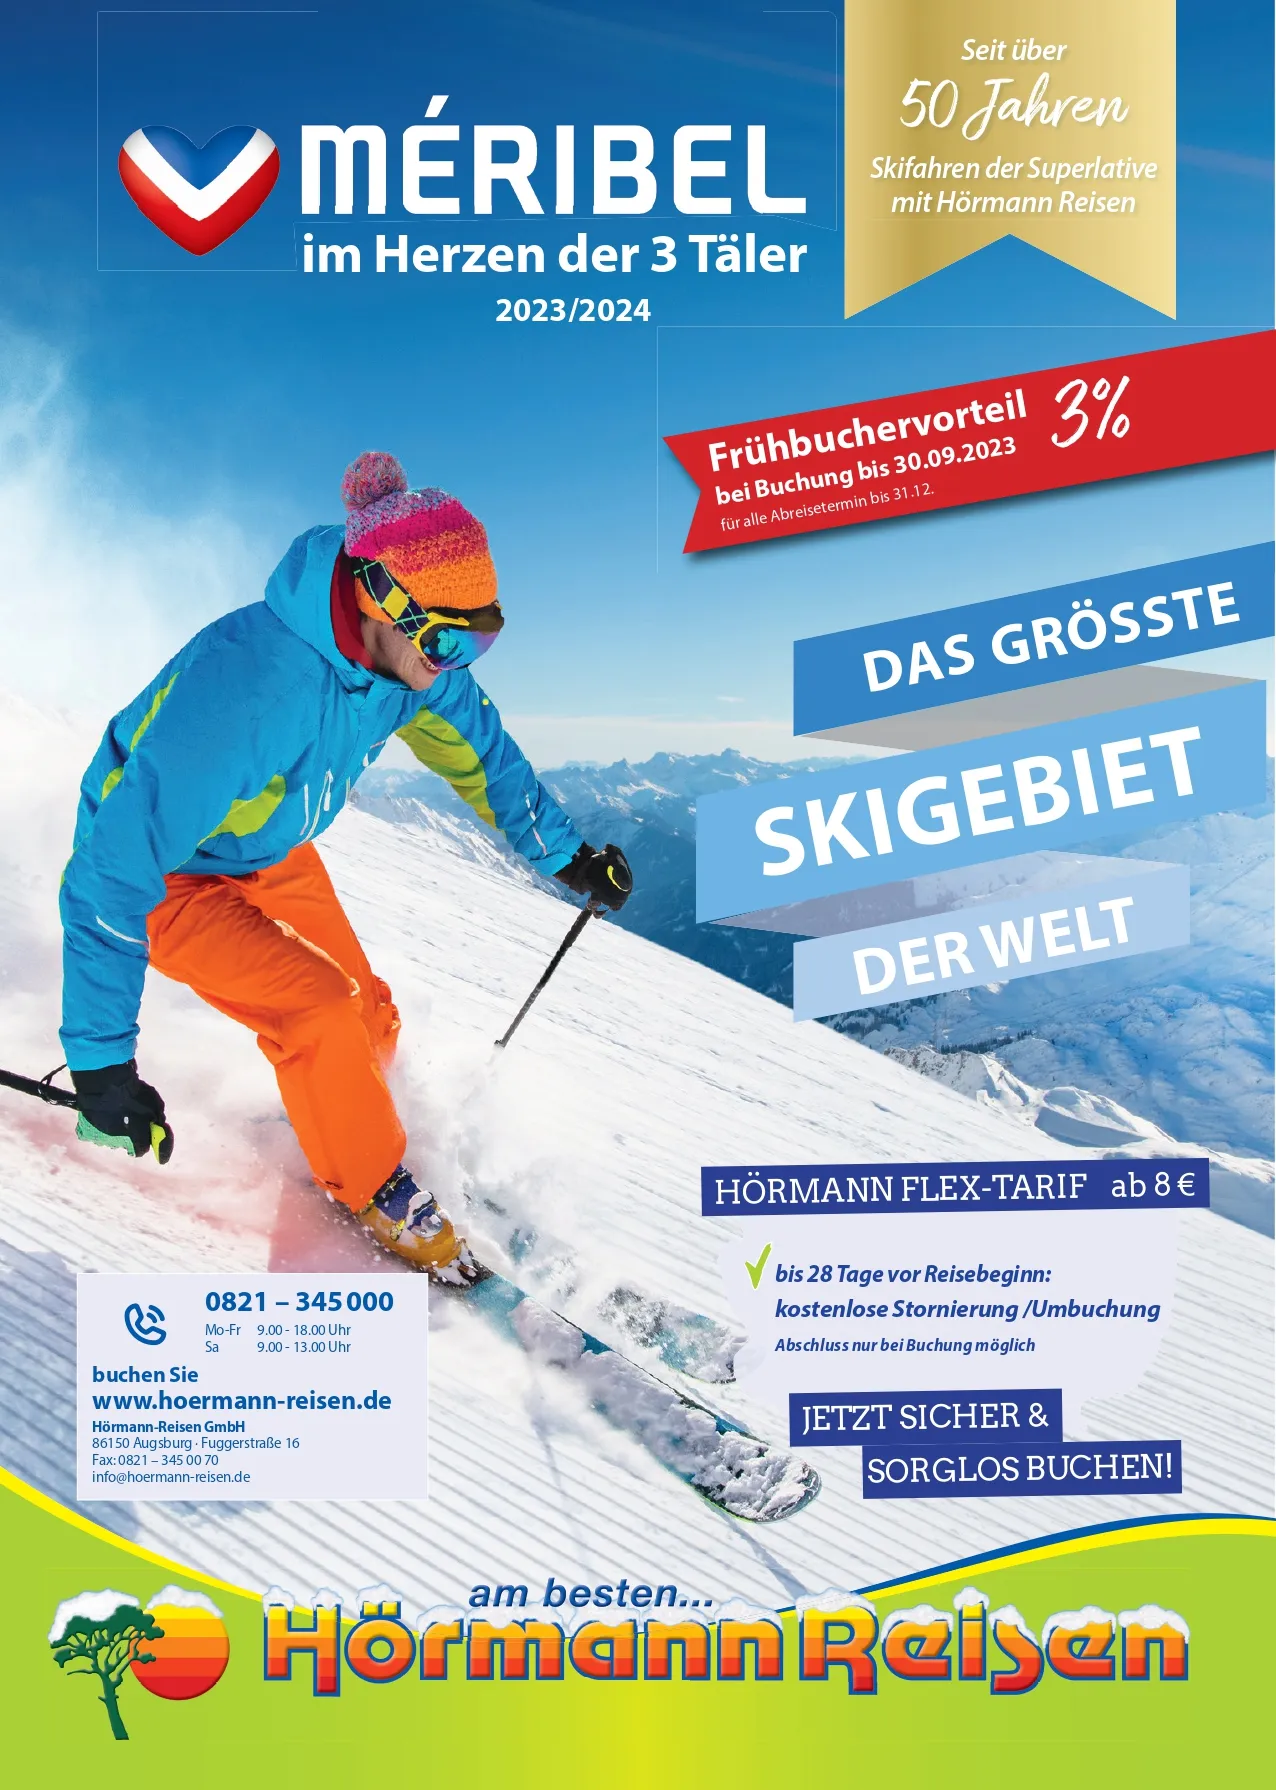 Skigebiet Méribel 2023/24